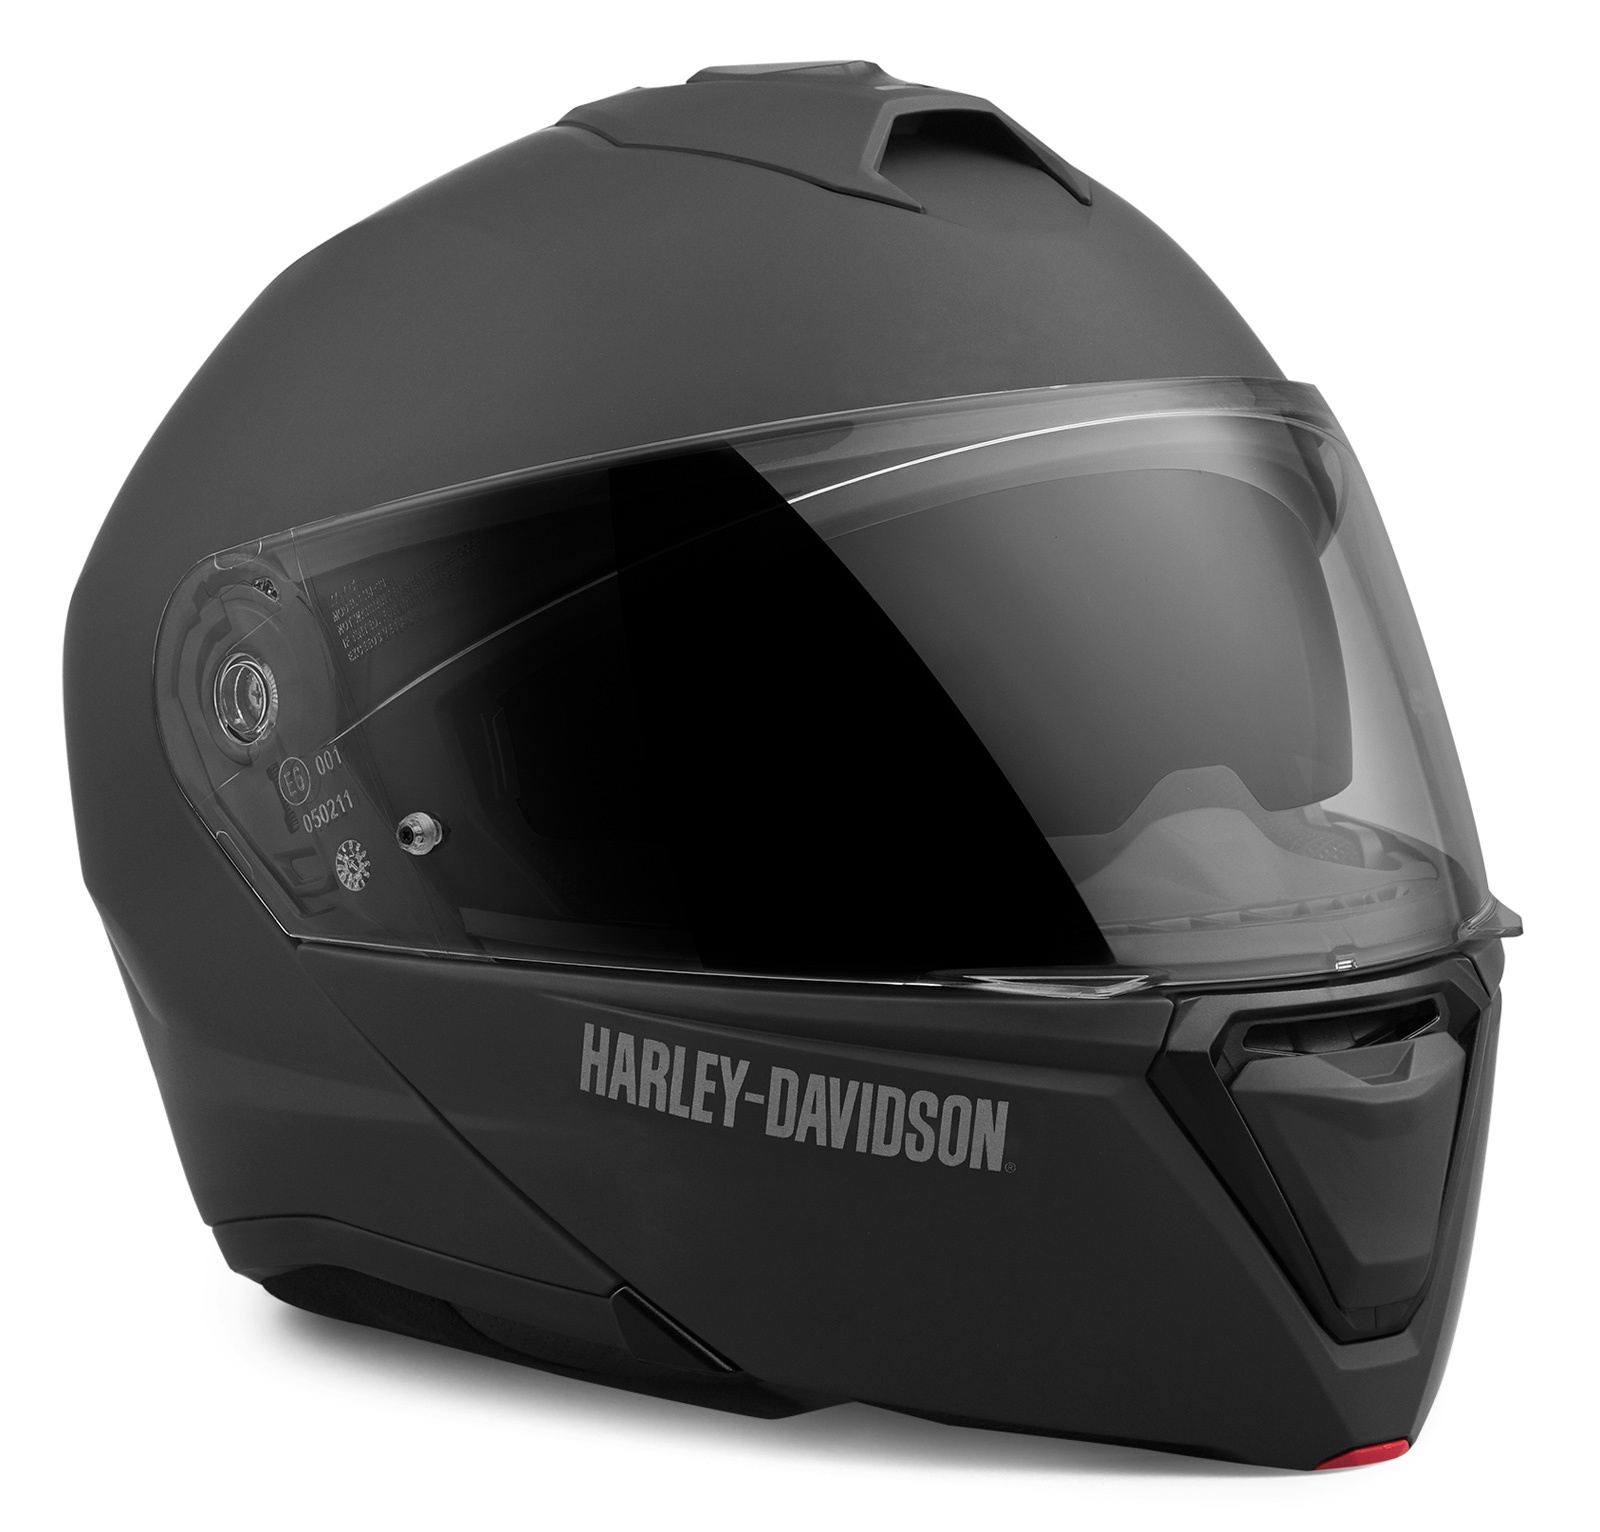 98159 21vx Harley Davidson Modular Helmet Capstone H31 Ece Black Matt At Thunderbike Shop